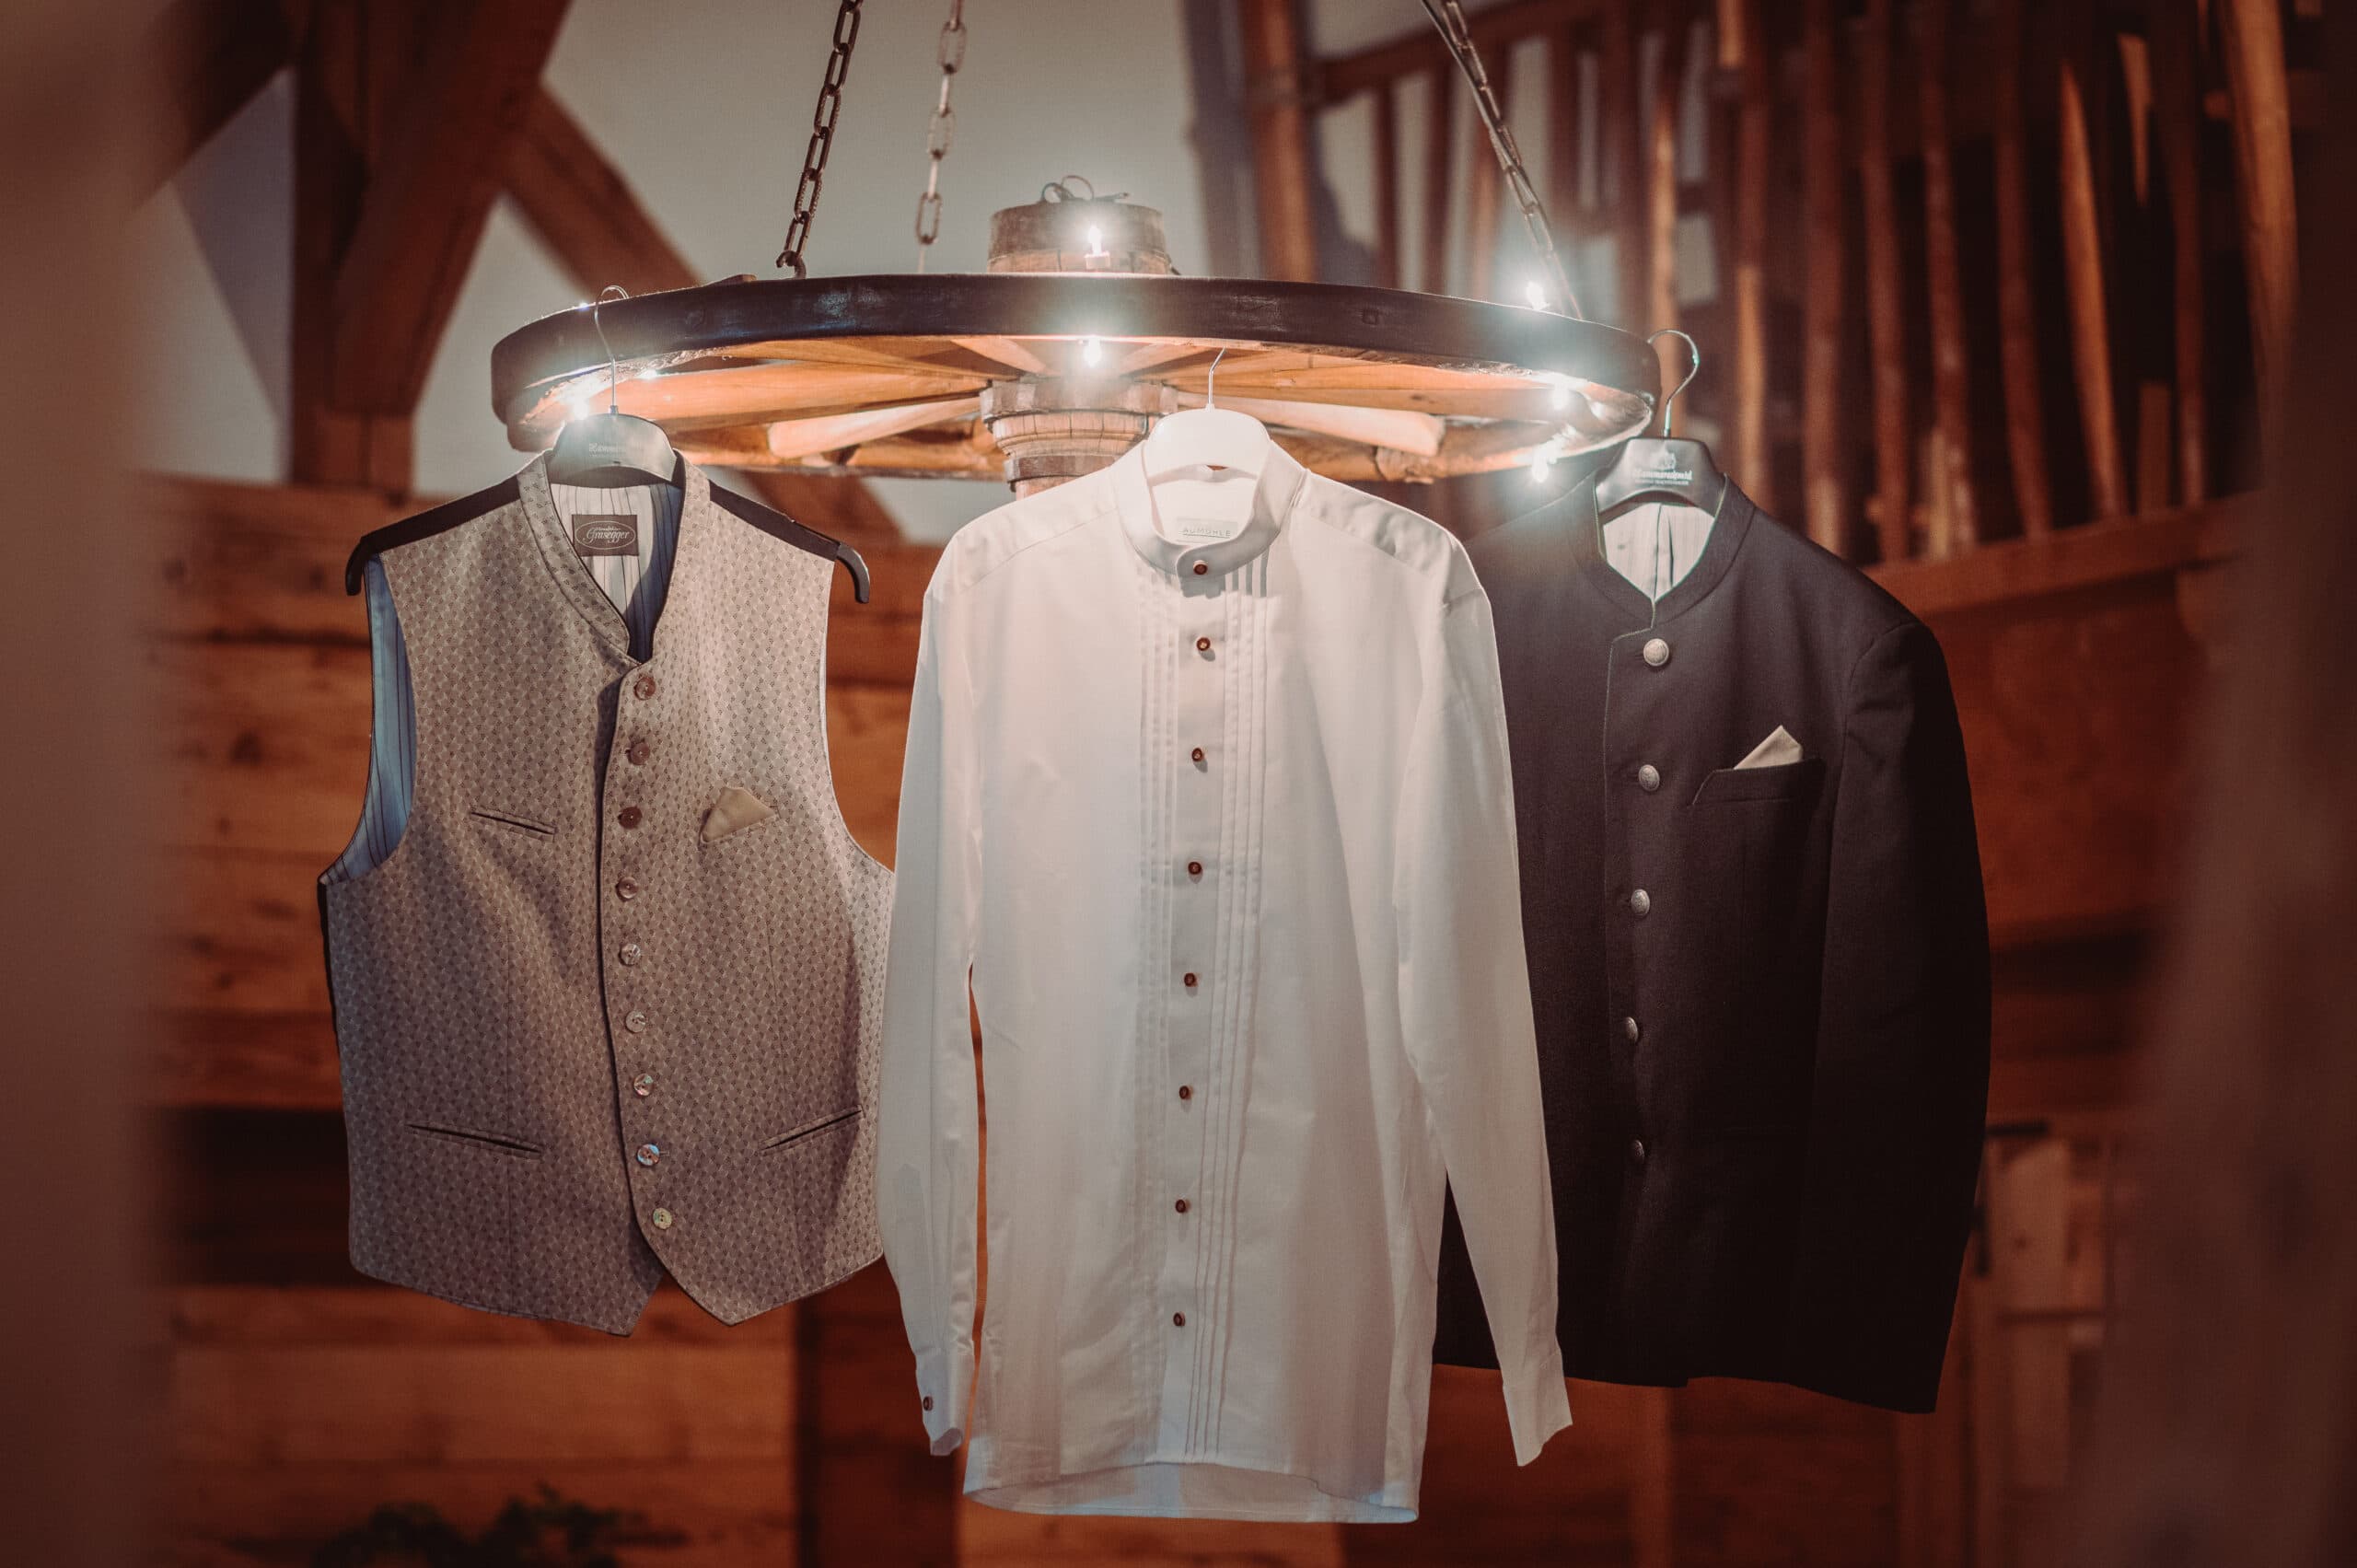 Das Getting Ready vom Bräutigam auf der Meckatzer Sportalp. In einem Raum aus Holz hängt die Weste, das Hemd und die Jacke vom Bräutigam